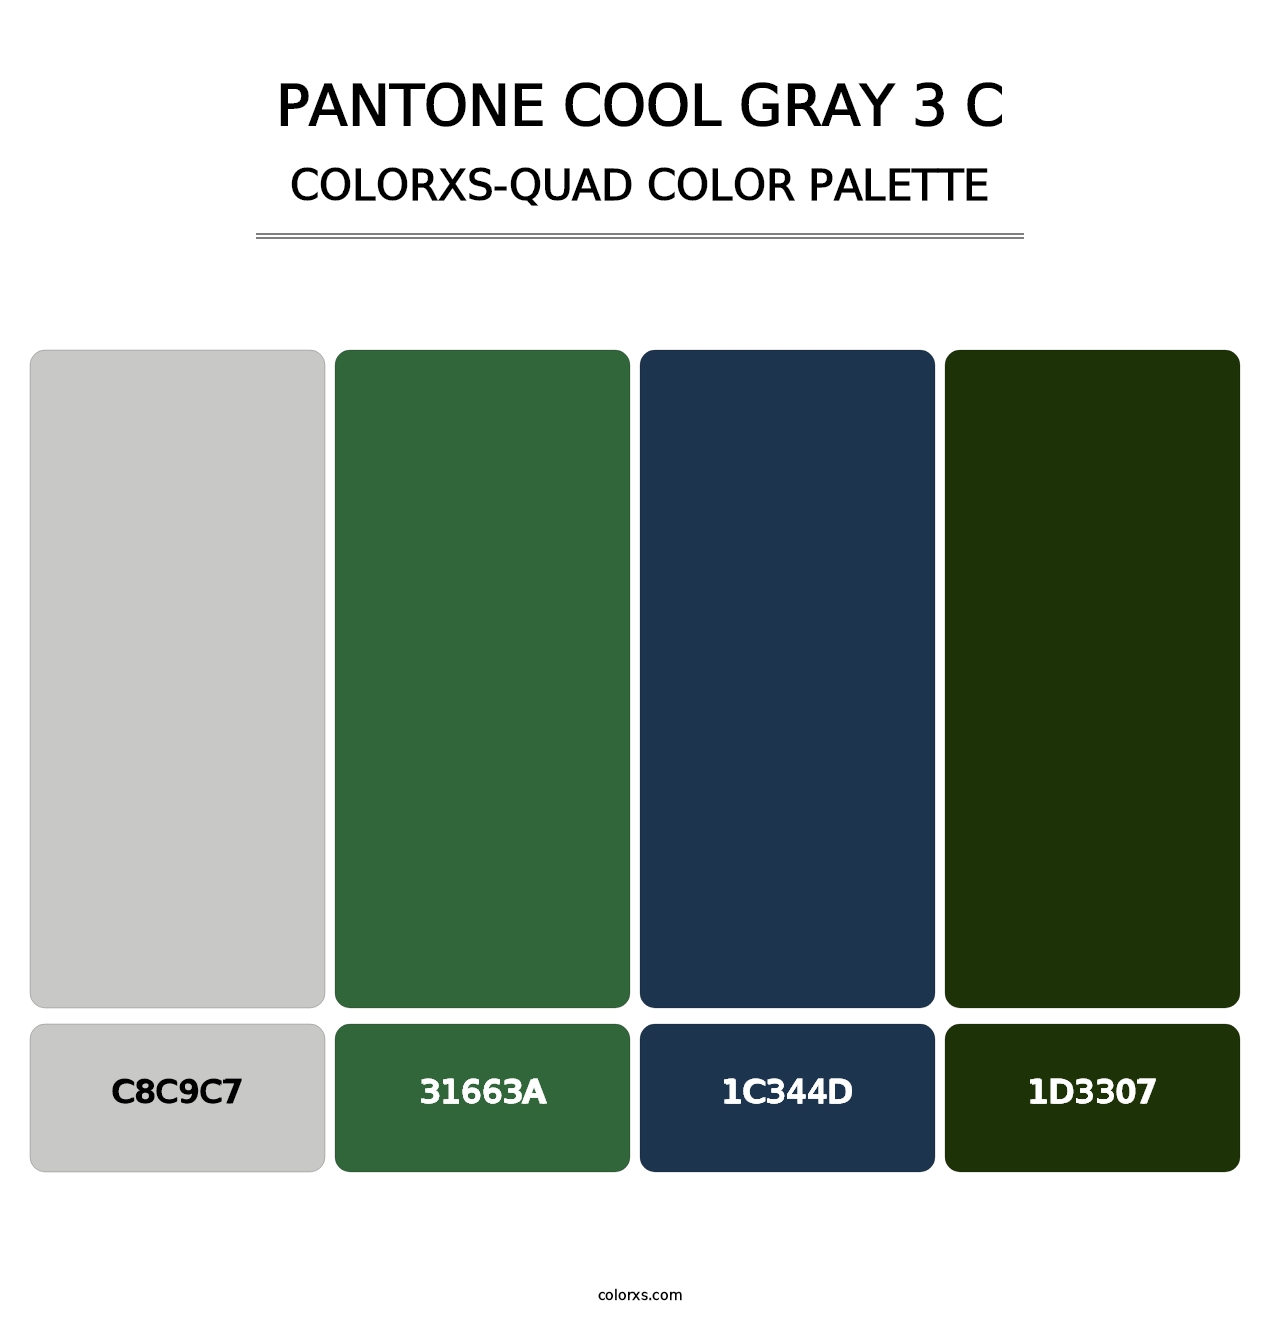 PANTONE Cool Gray 3 C - Colorxs Quad Palette